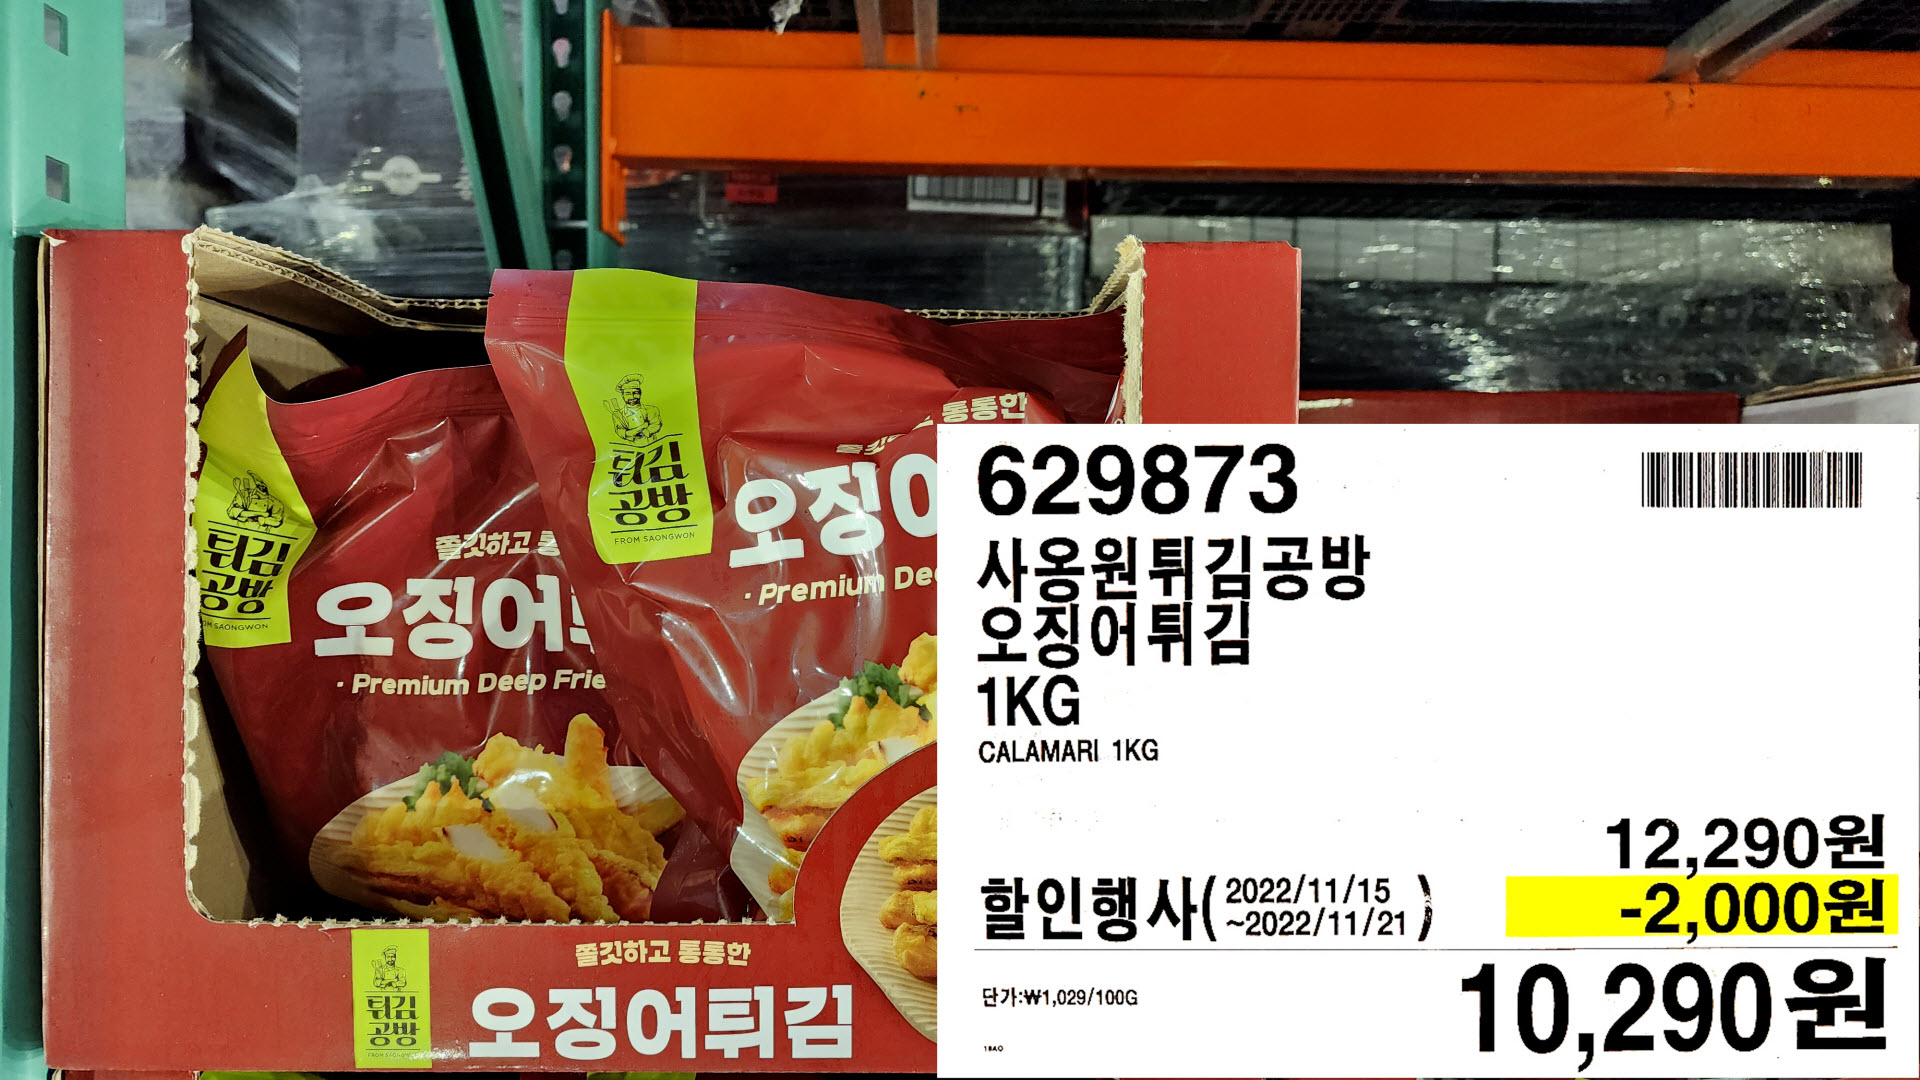 사옹원튀김공방
오징어튀김
1KG
CALAMARI 1KG
10&#44;290원